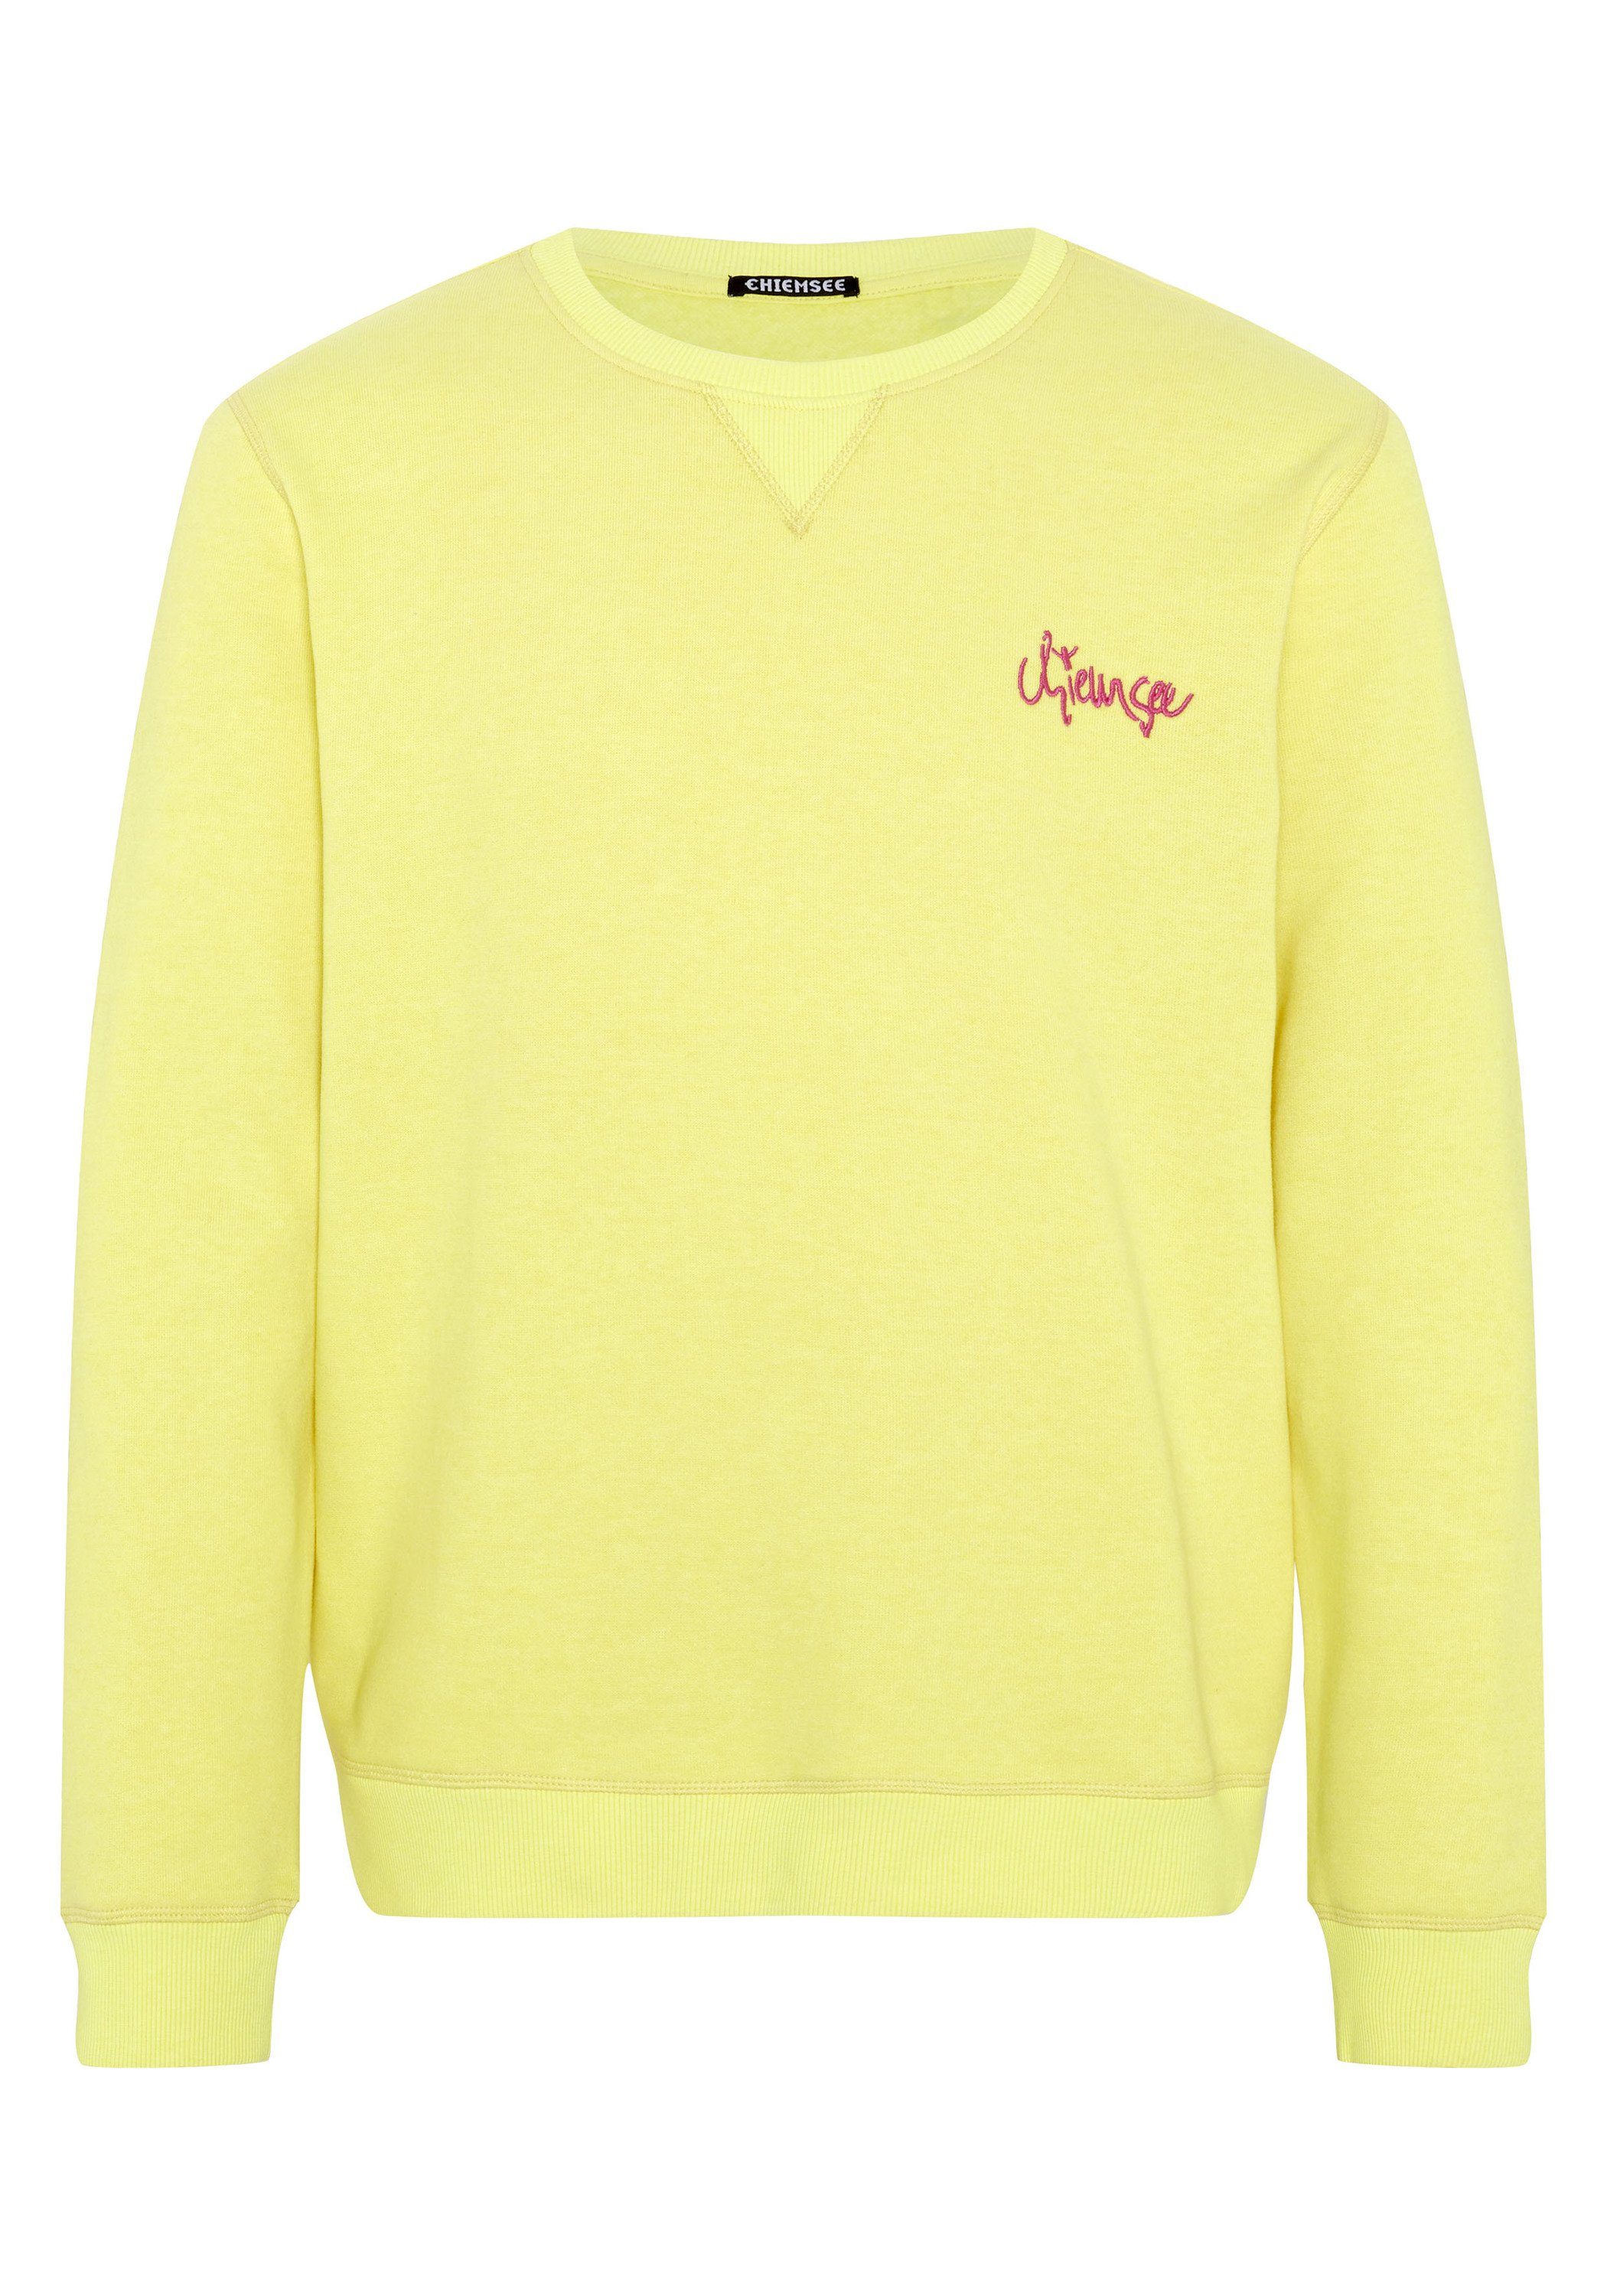 Chiemsee Sweatshirt Sweatshirt aus Baumwollmix mit Logo-Print 1 gelb